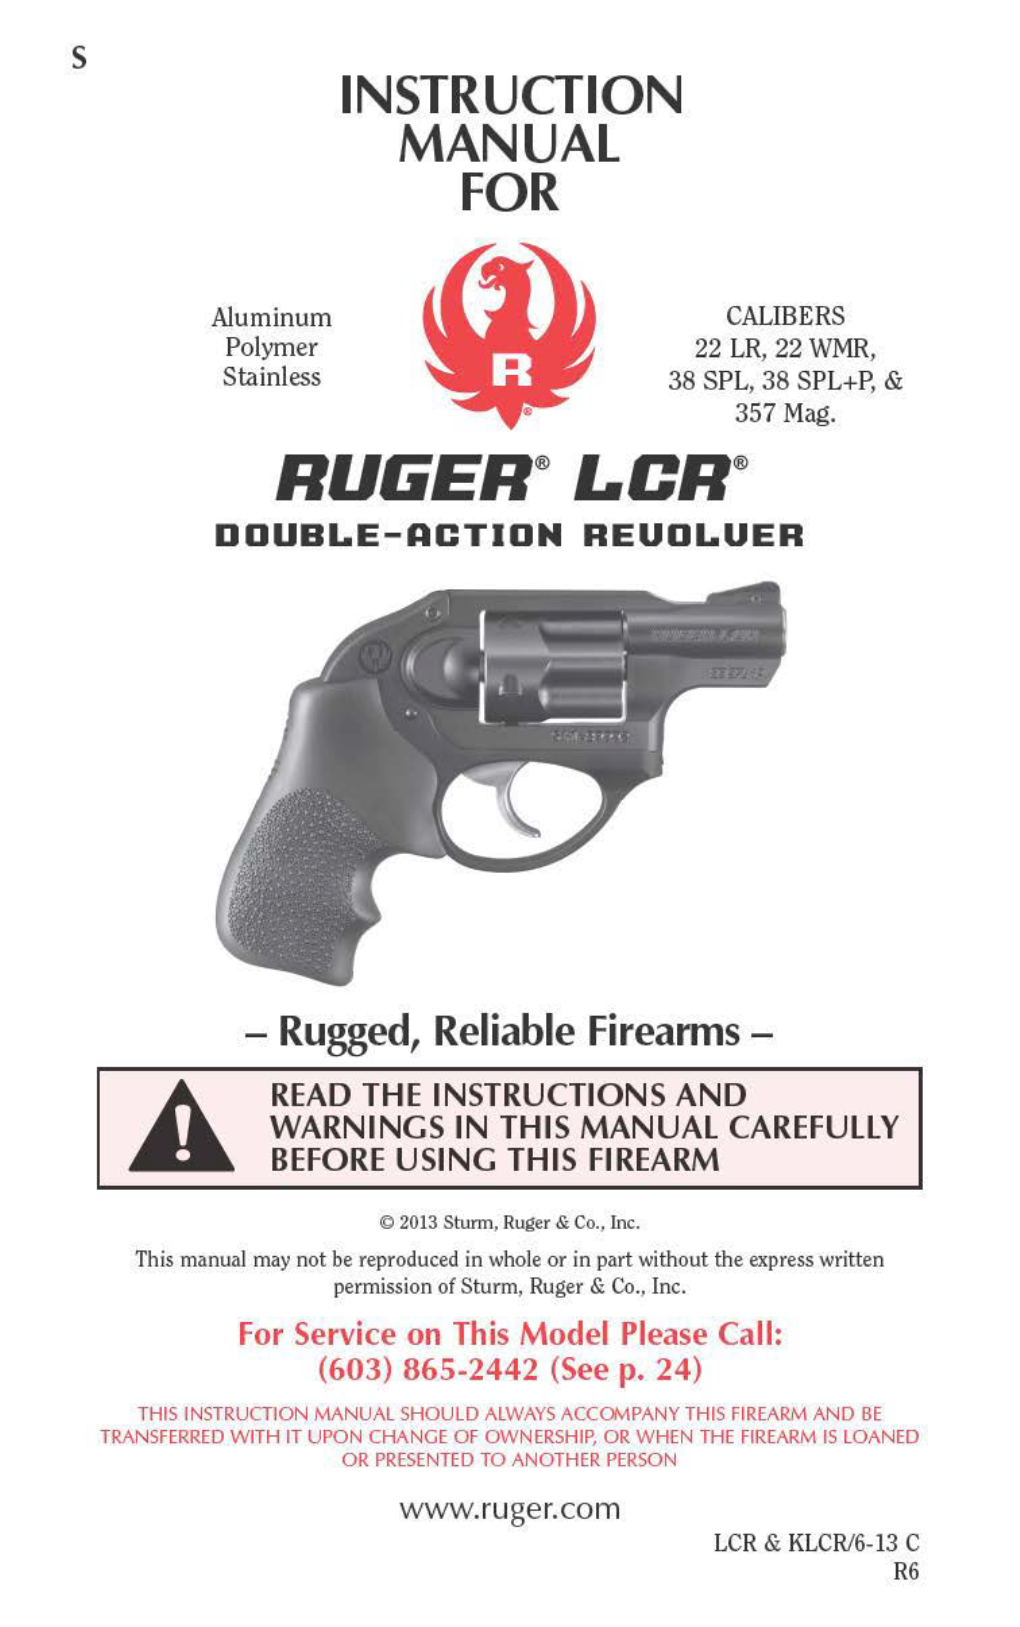 RUGER SP101 Revolver